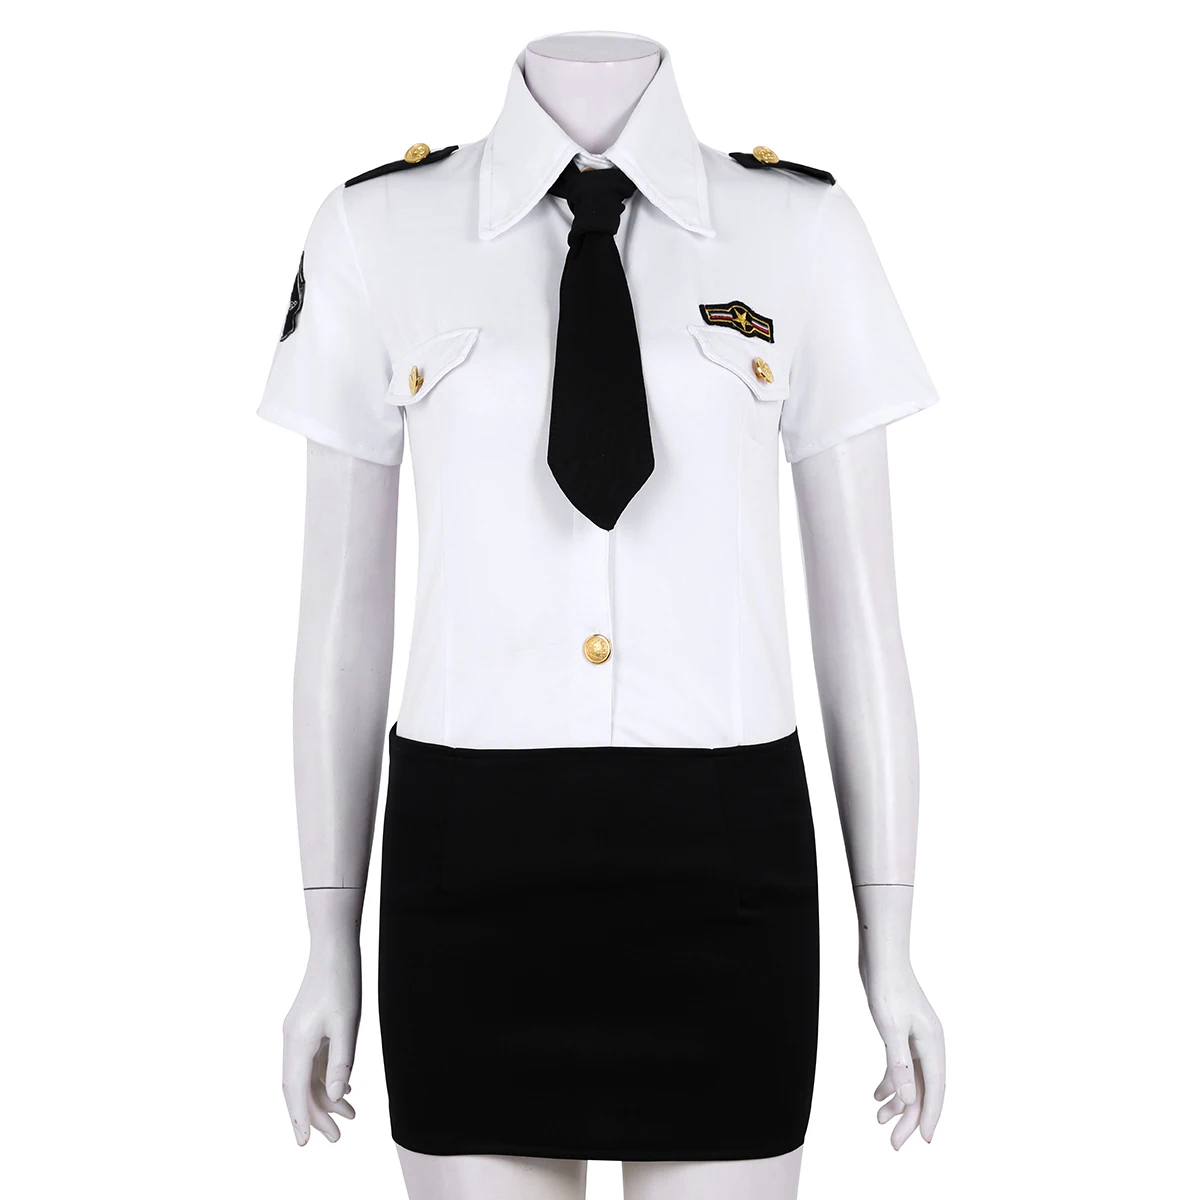 Для женщин и взрослых, полицейский, женская униформа, сексуальный полицейский, косплей костюм, белая рубашка, юбка, шляпа, галстук, ролевые костюмы